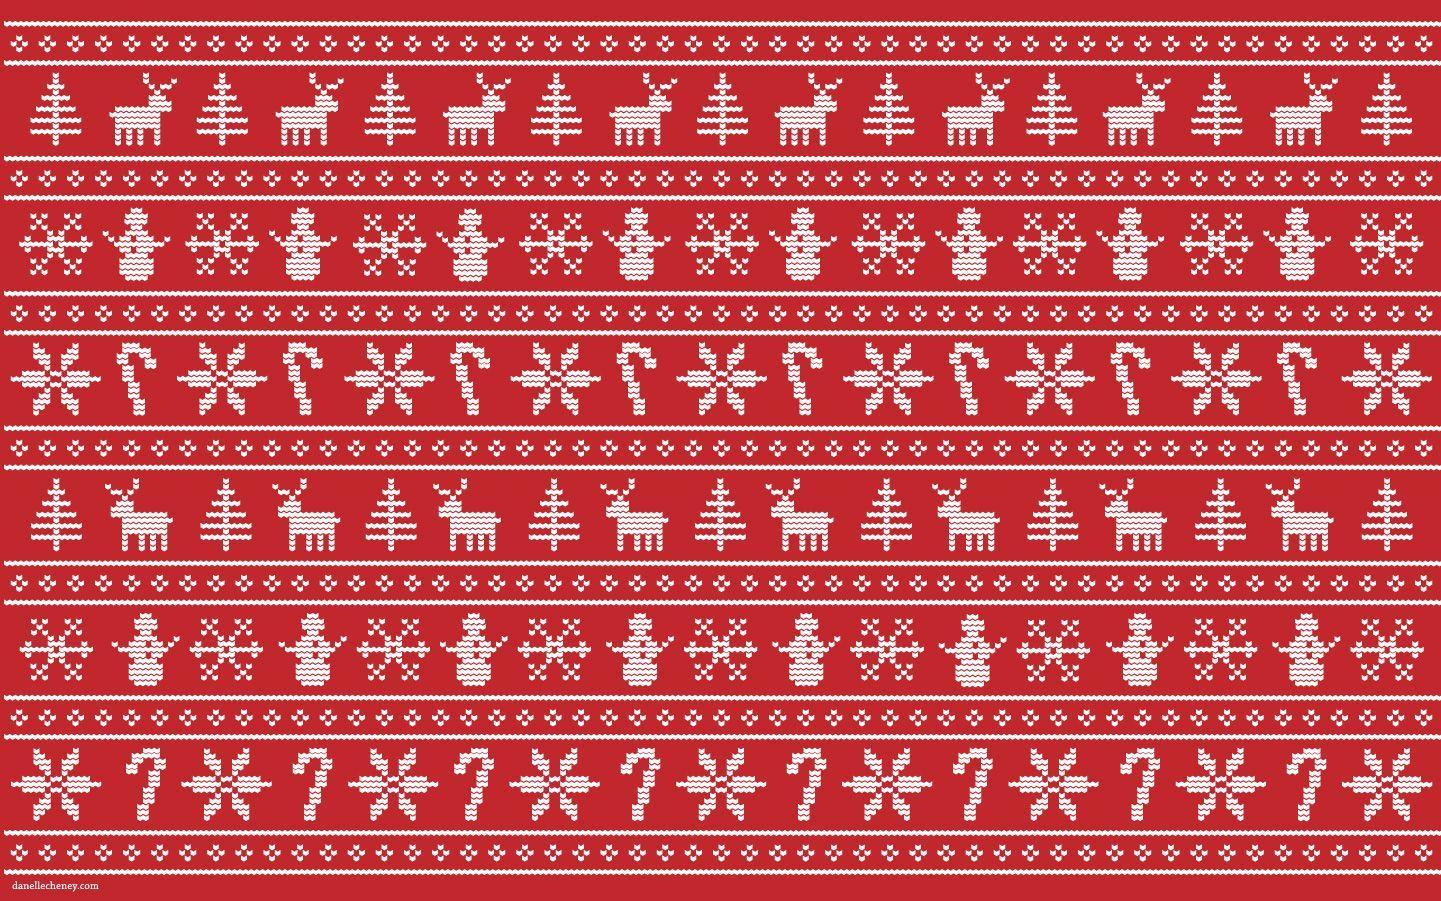 Nào hãy cùng mình thưởng thức những chiếc áo len Giáng sinh đáng yêu nhất qua những hình ảnh tuyệt vời nhé! Mùa Giáng sinh không thể thiếu chiếc áo len ấm áp và đáng yêu, hãy truy cập ngay để chọn cho mình chiếc áo yêu thích nhất cho mùa lễ hội này.